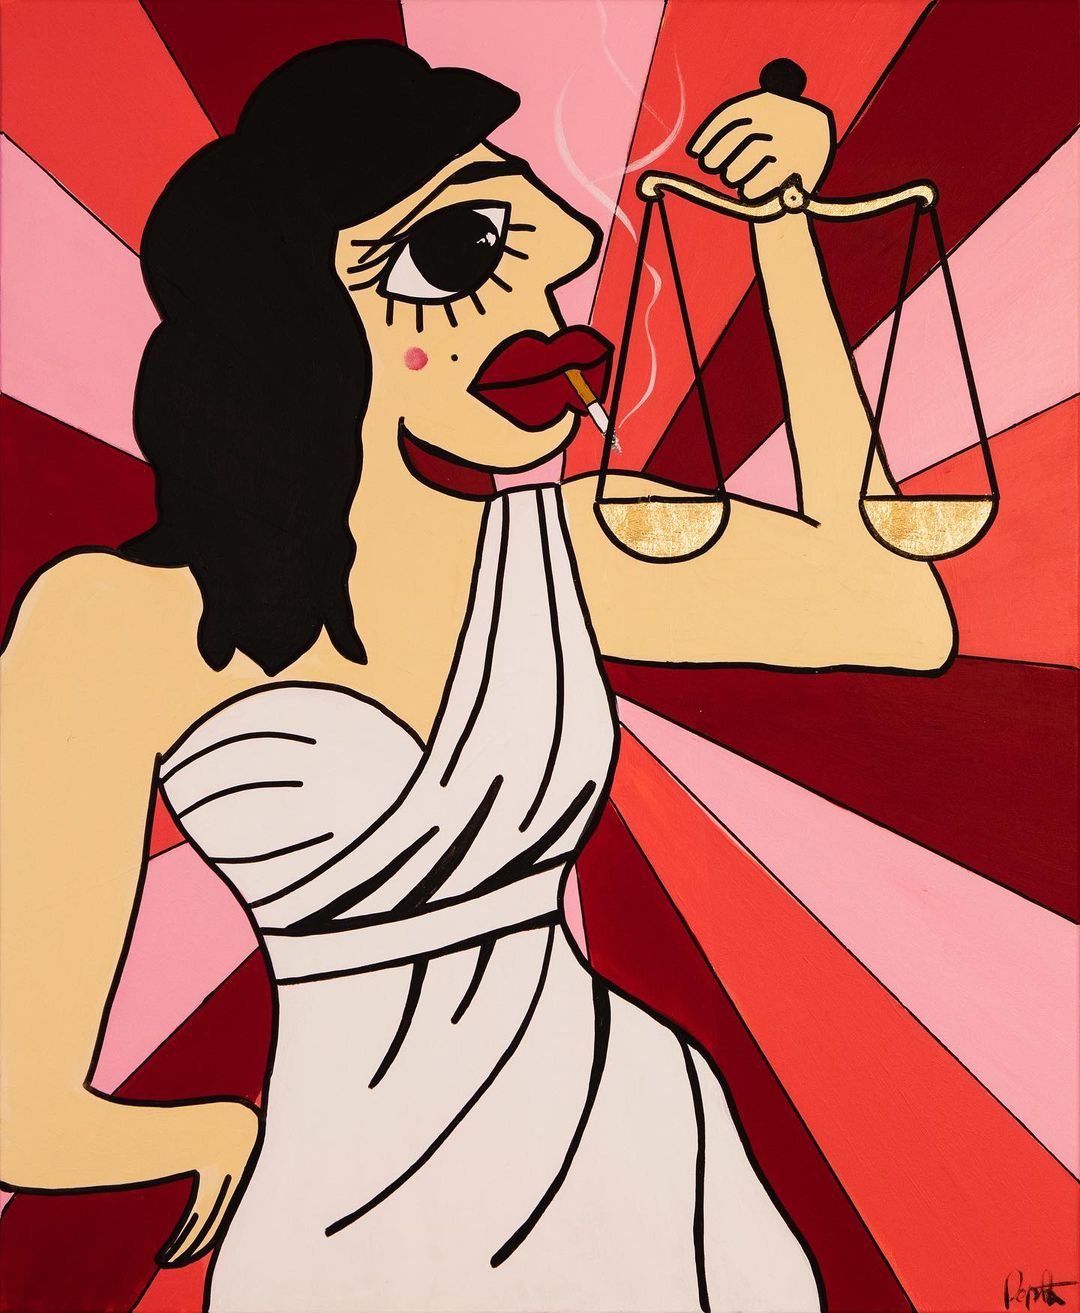 Une femme, ressemblant à une déesse et semblant symboliser la justice, porte une balance